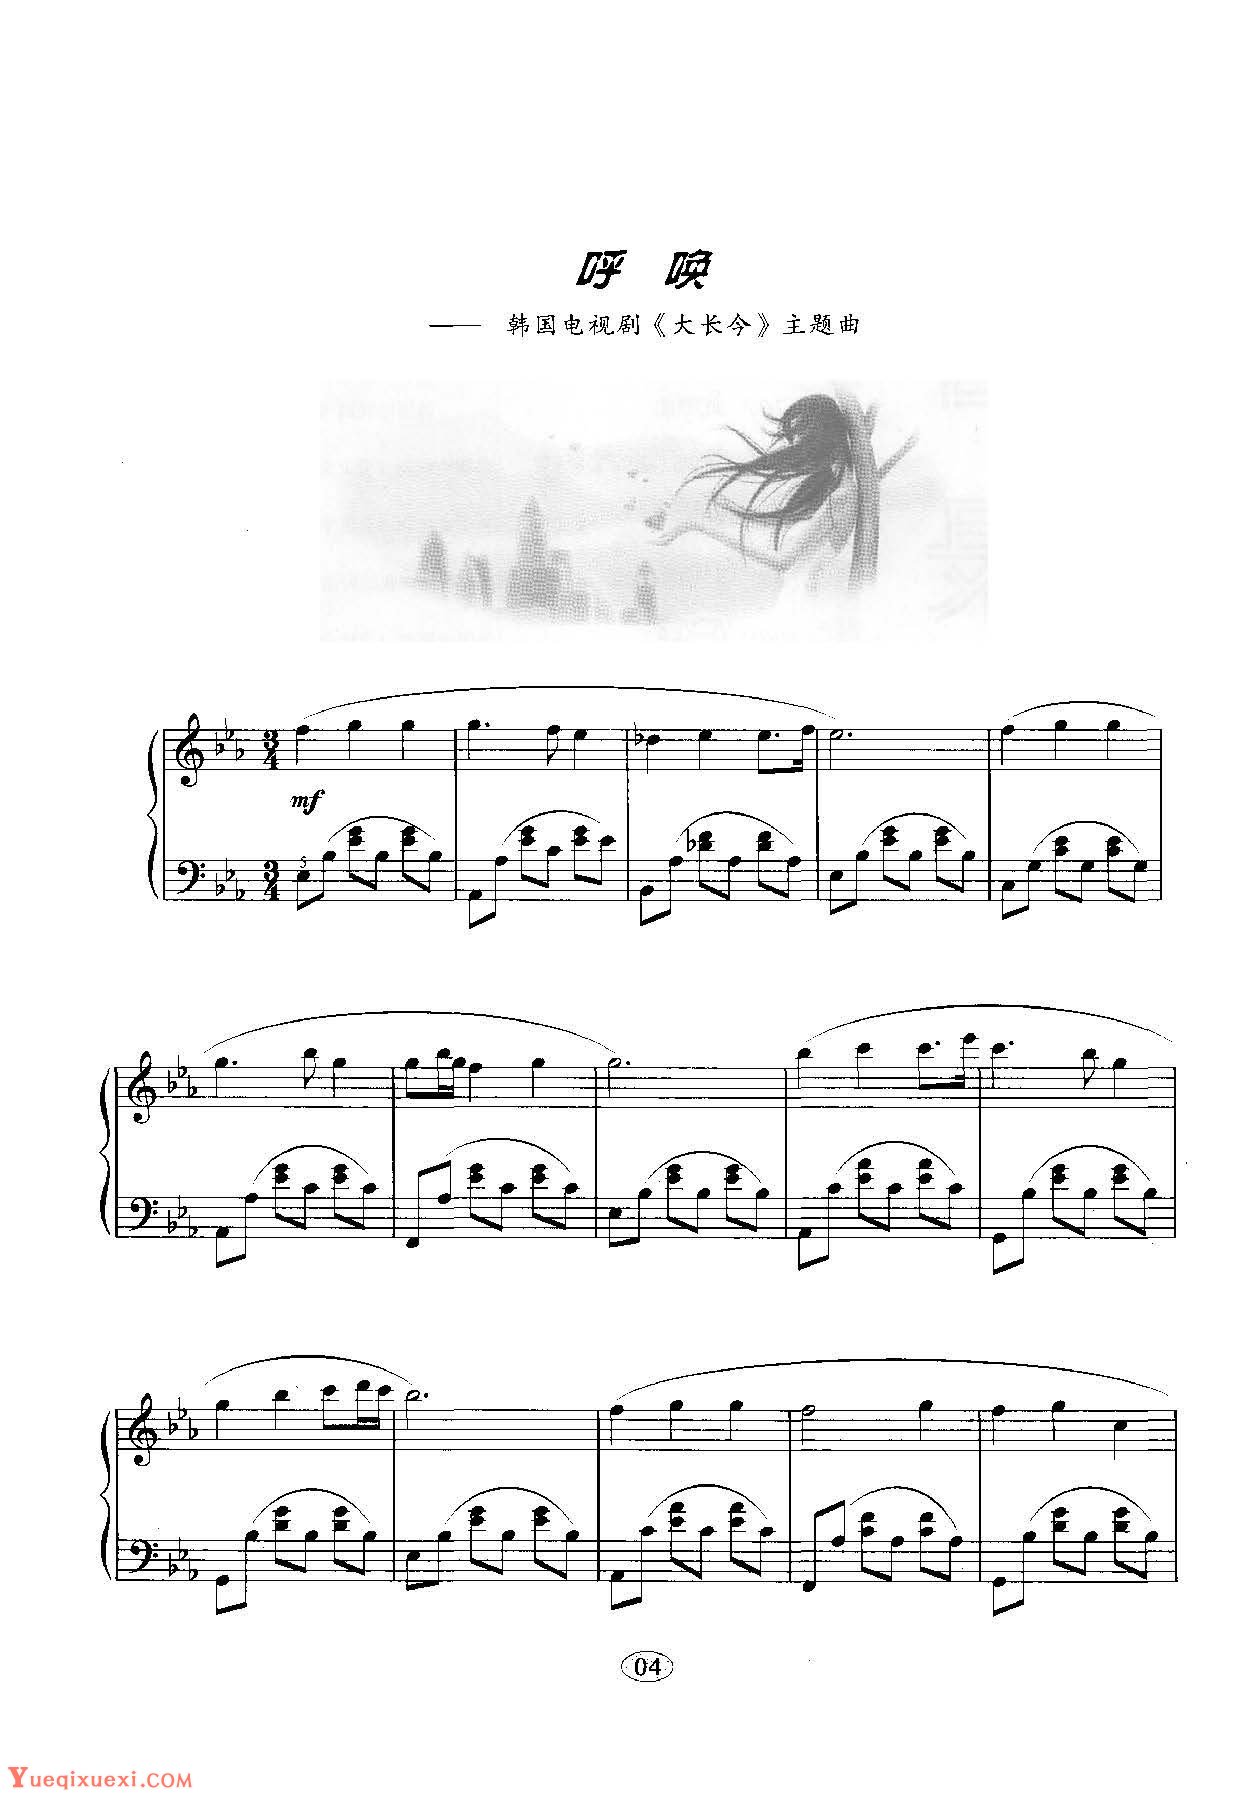 韩日剧音乐钢琴曲：呼唤 韩国电视剧《大长今》主题曲 